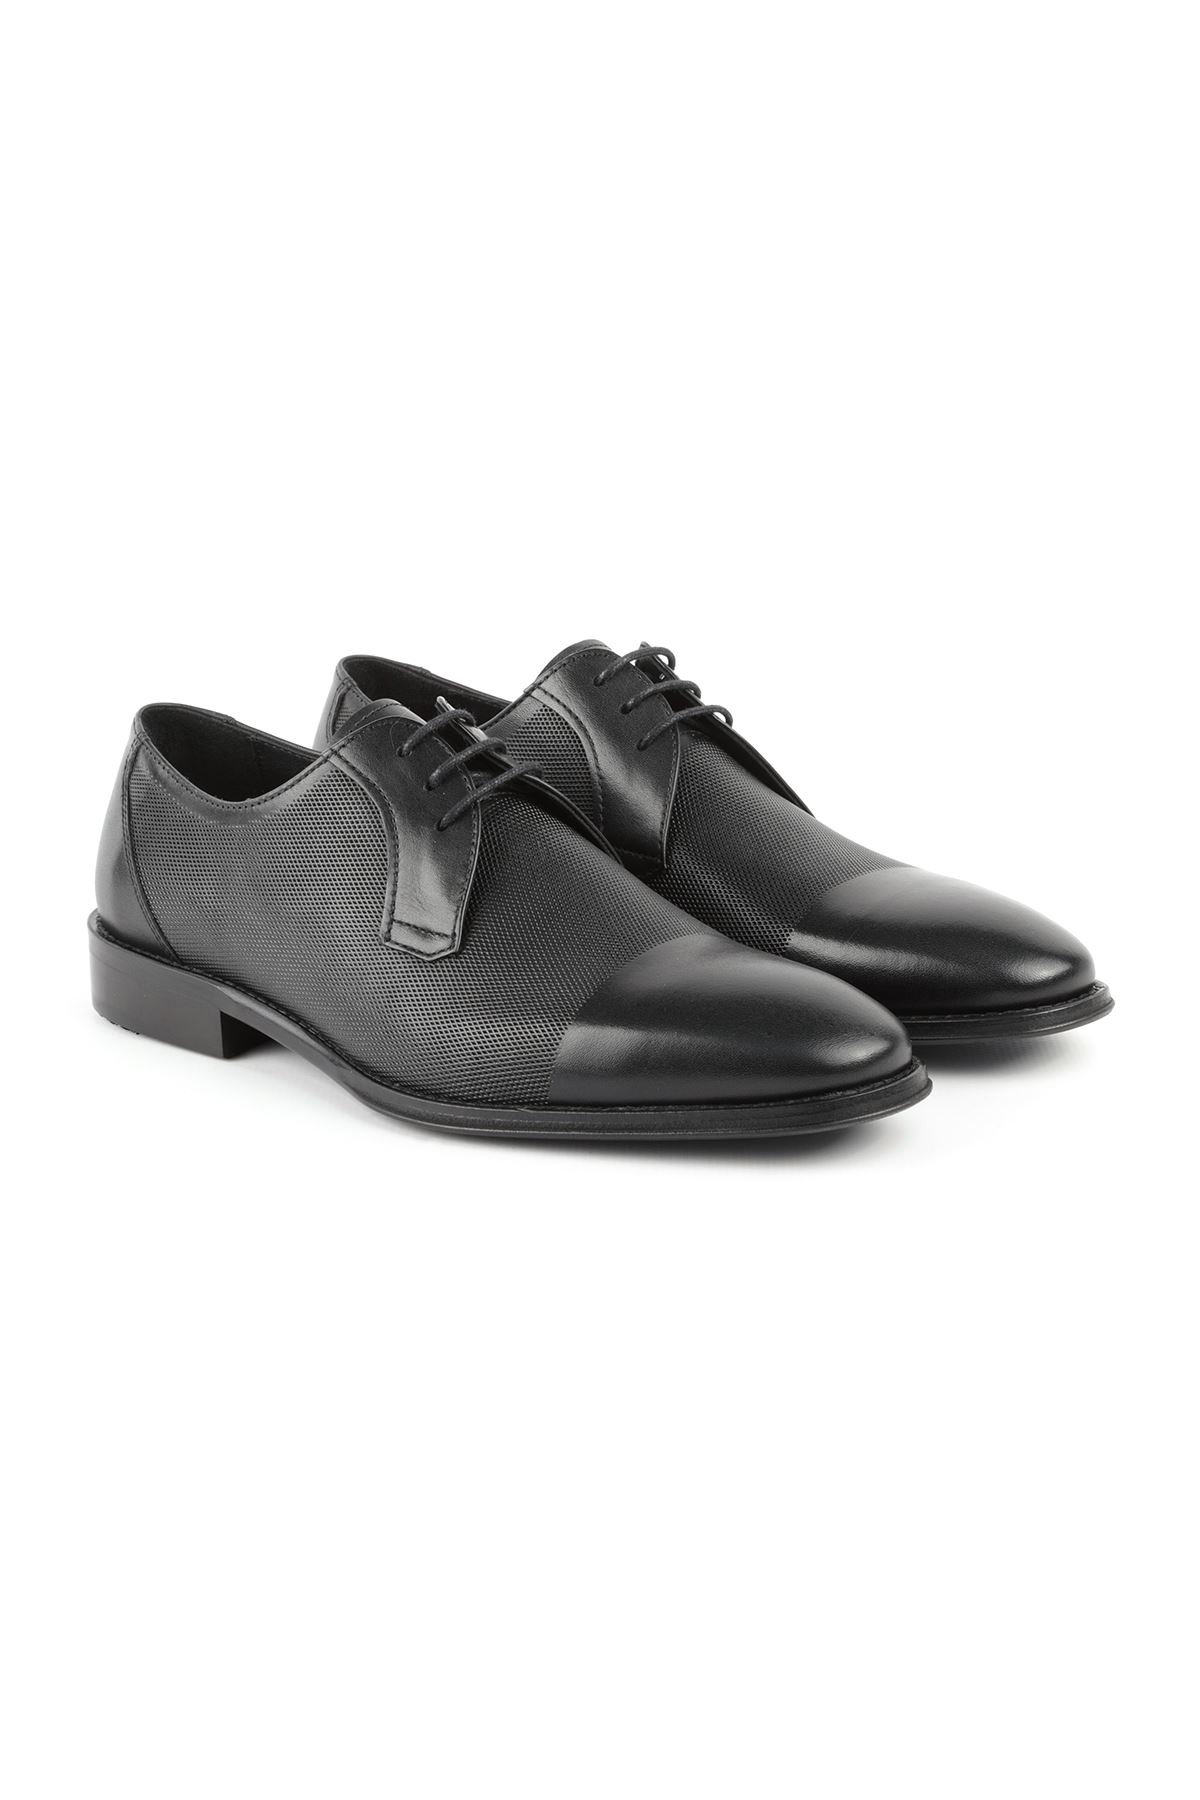 Libero L3623 Siyah Klasik Erkek Ayakkabı 